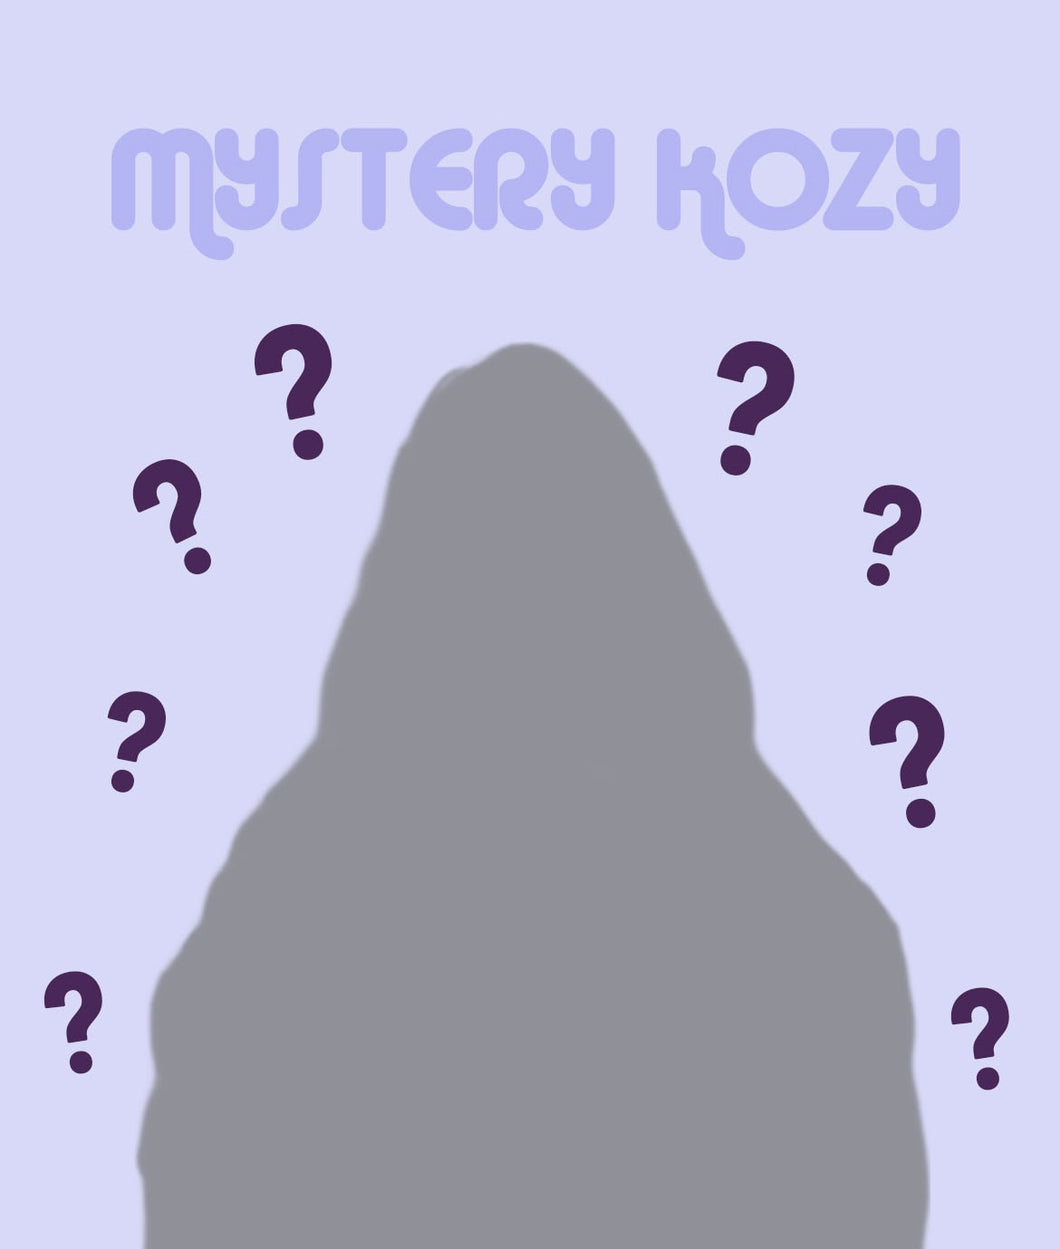 Mystery Kozy